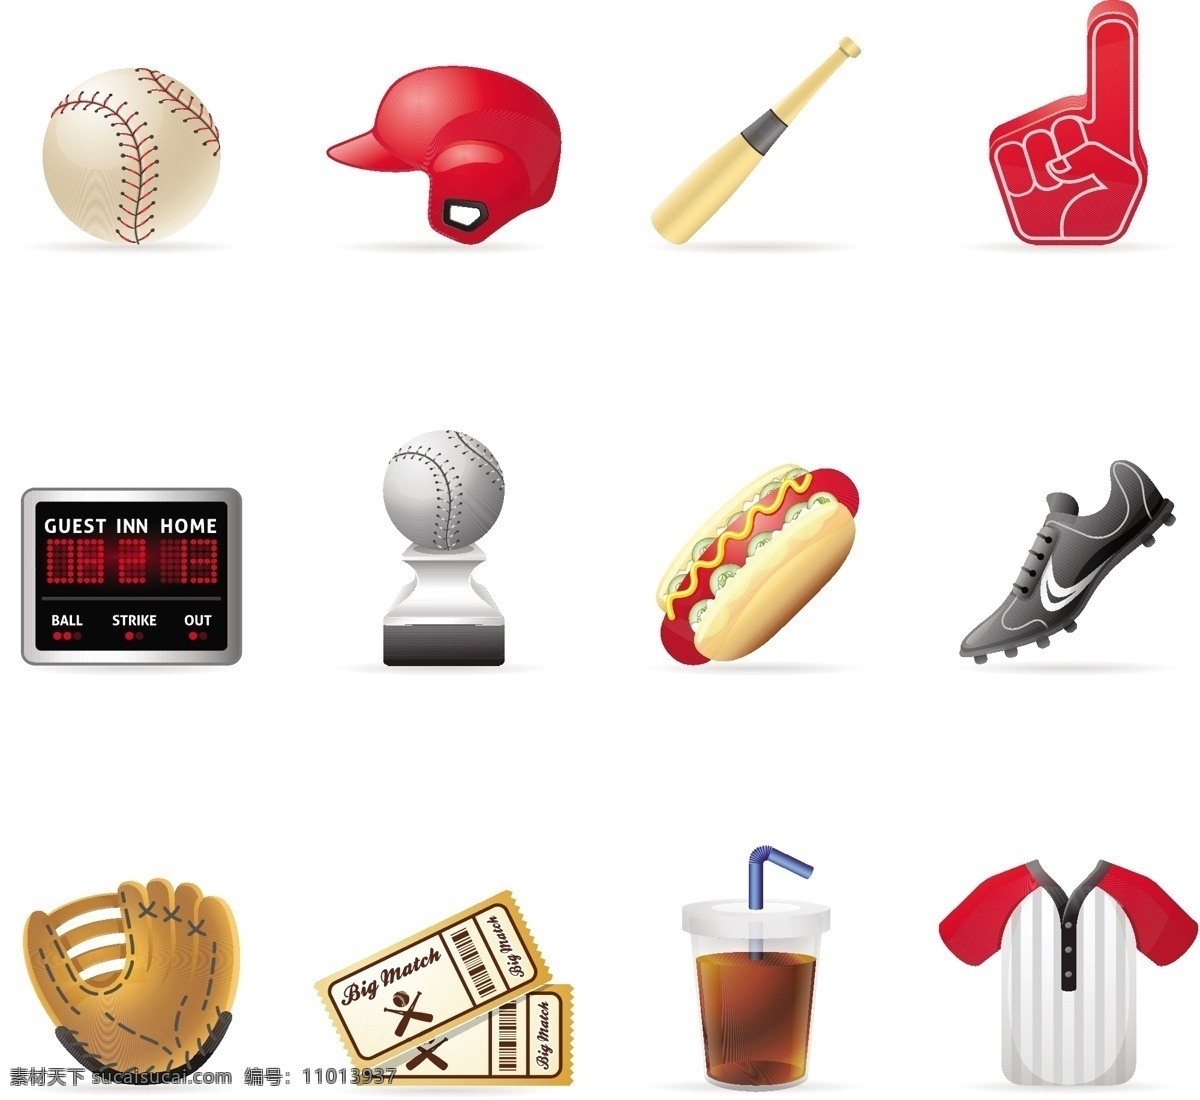 棒球 棒球帽 体育运动 文化艺术 运动 棒球矢量素材 棒球模板下载 棒球帽子 棒球场 运动装备 矢量 矢量图 日常生活